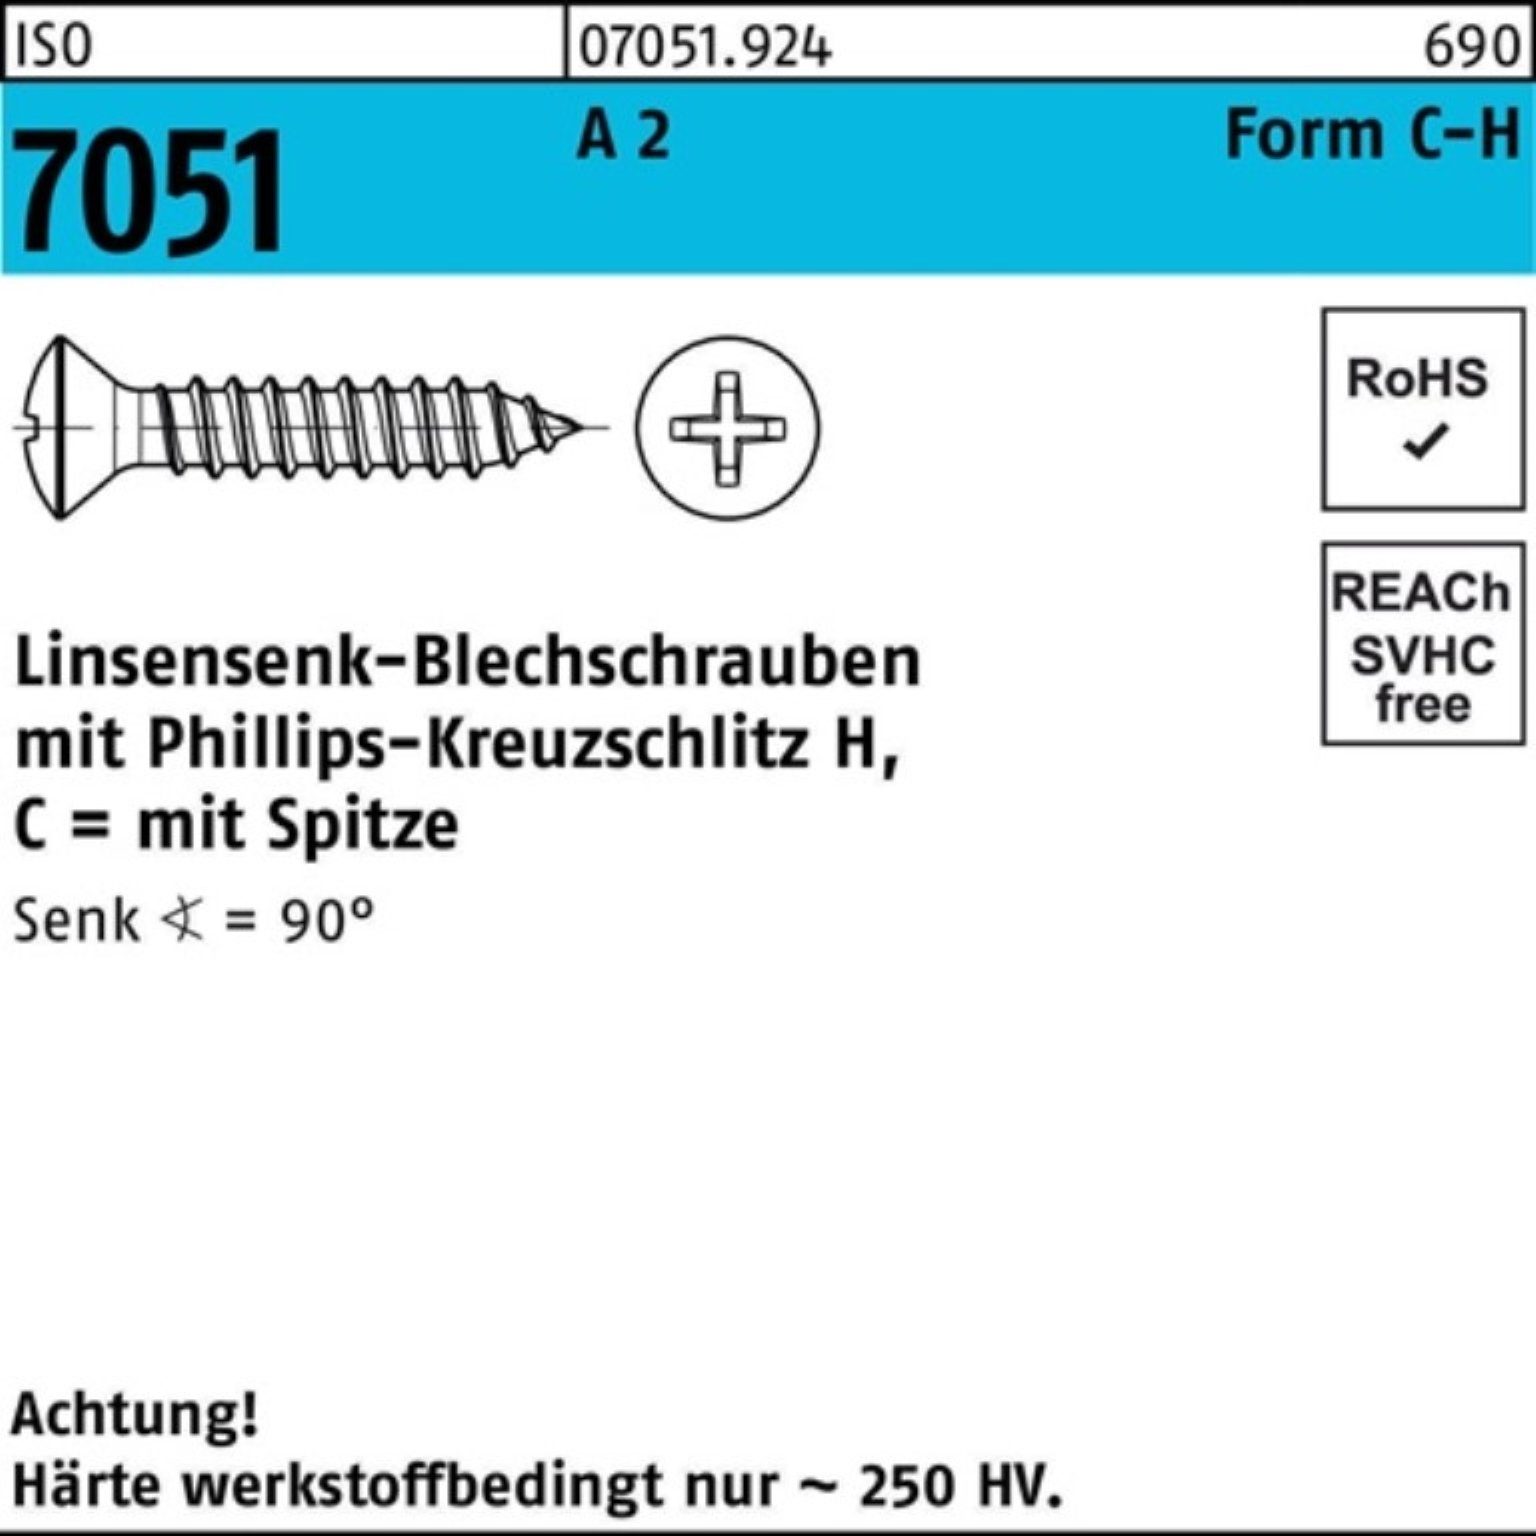 LISEKO 2 16 4,2x Spitze/PH 1000er ISO -C-H 7051 Pack 1 Reyher Blechschraube Blechschraube A